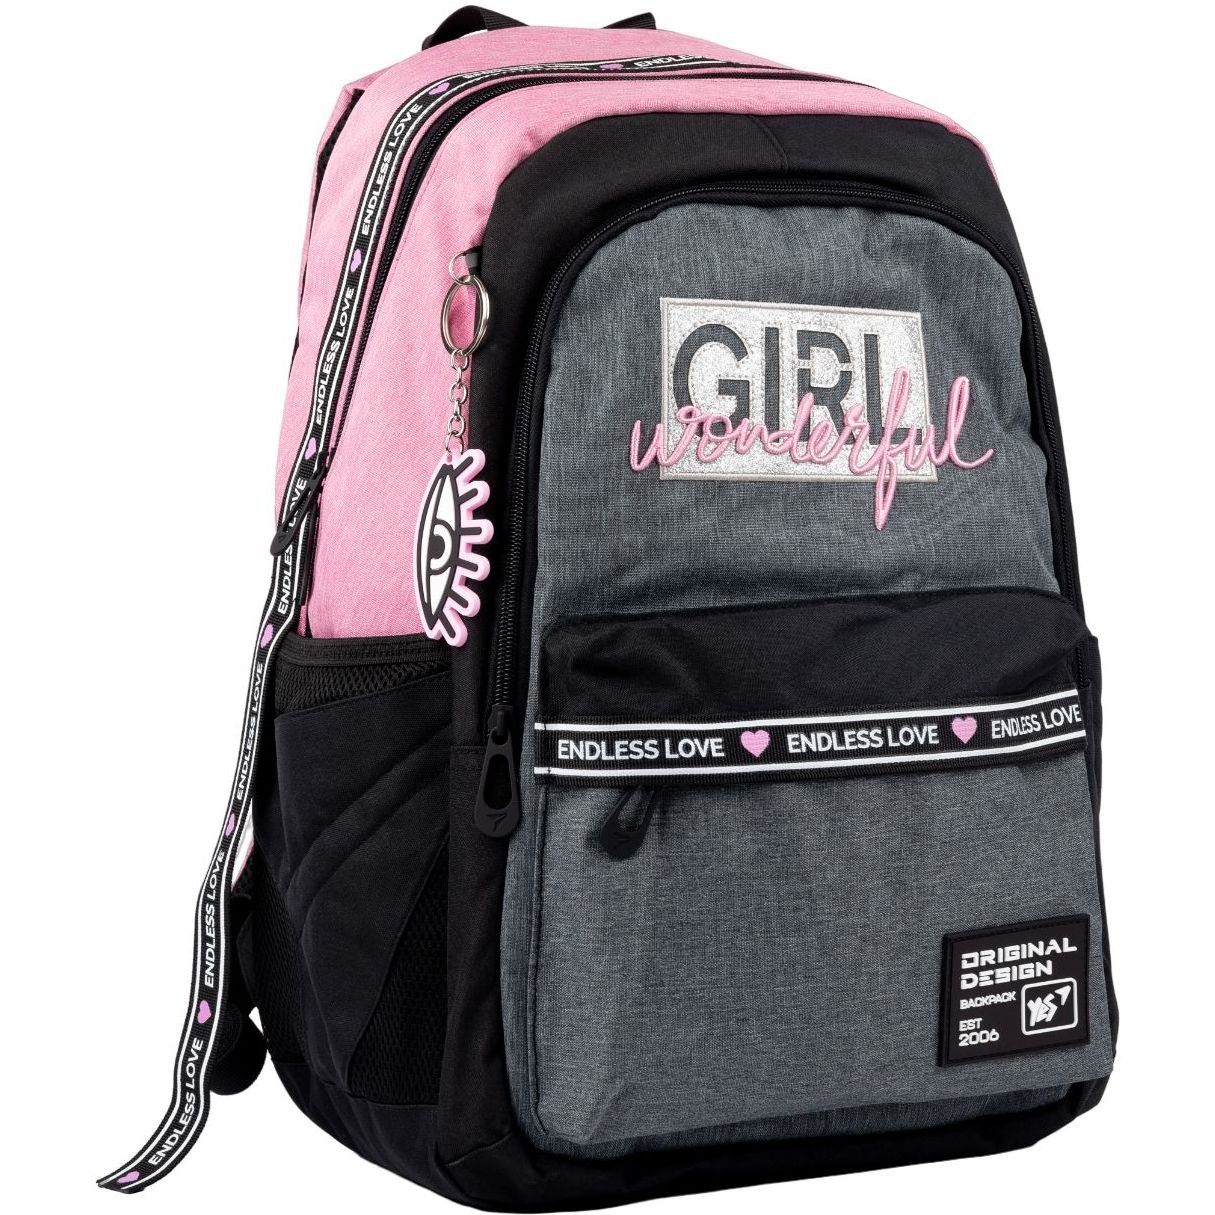 Рюкзак Yes TS-61 Girl Wonderful, чорний з рожевим (558908) - фото 2